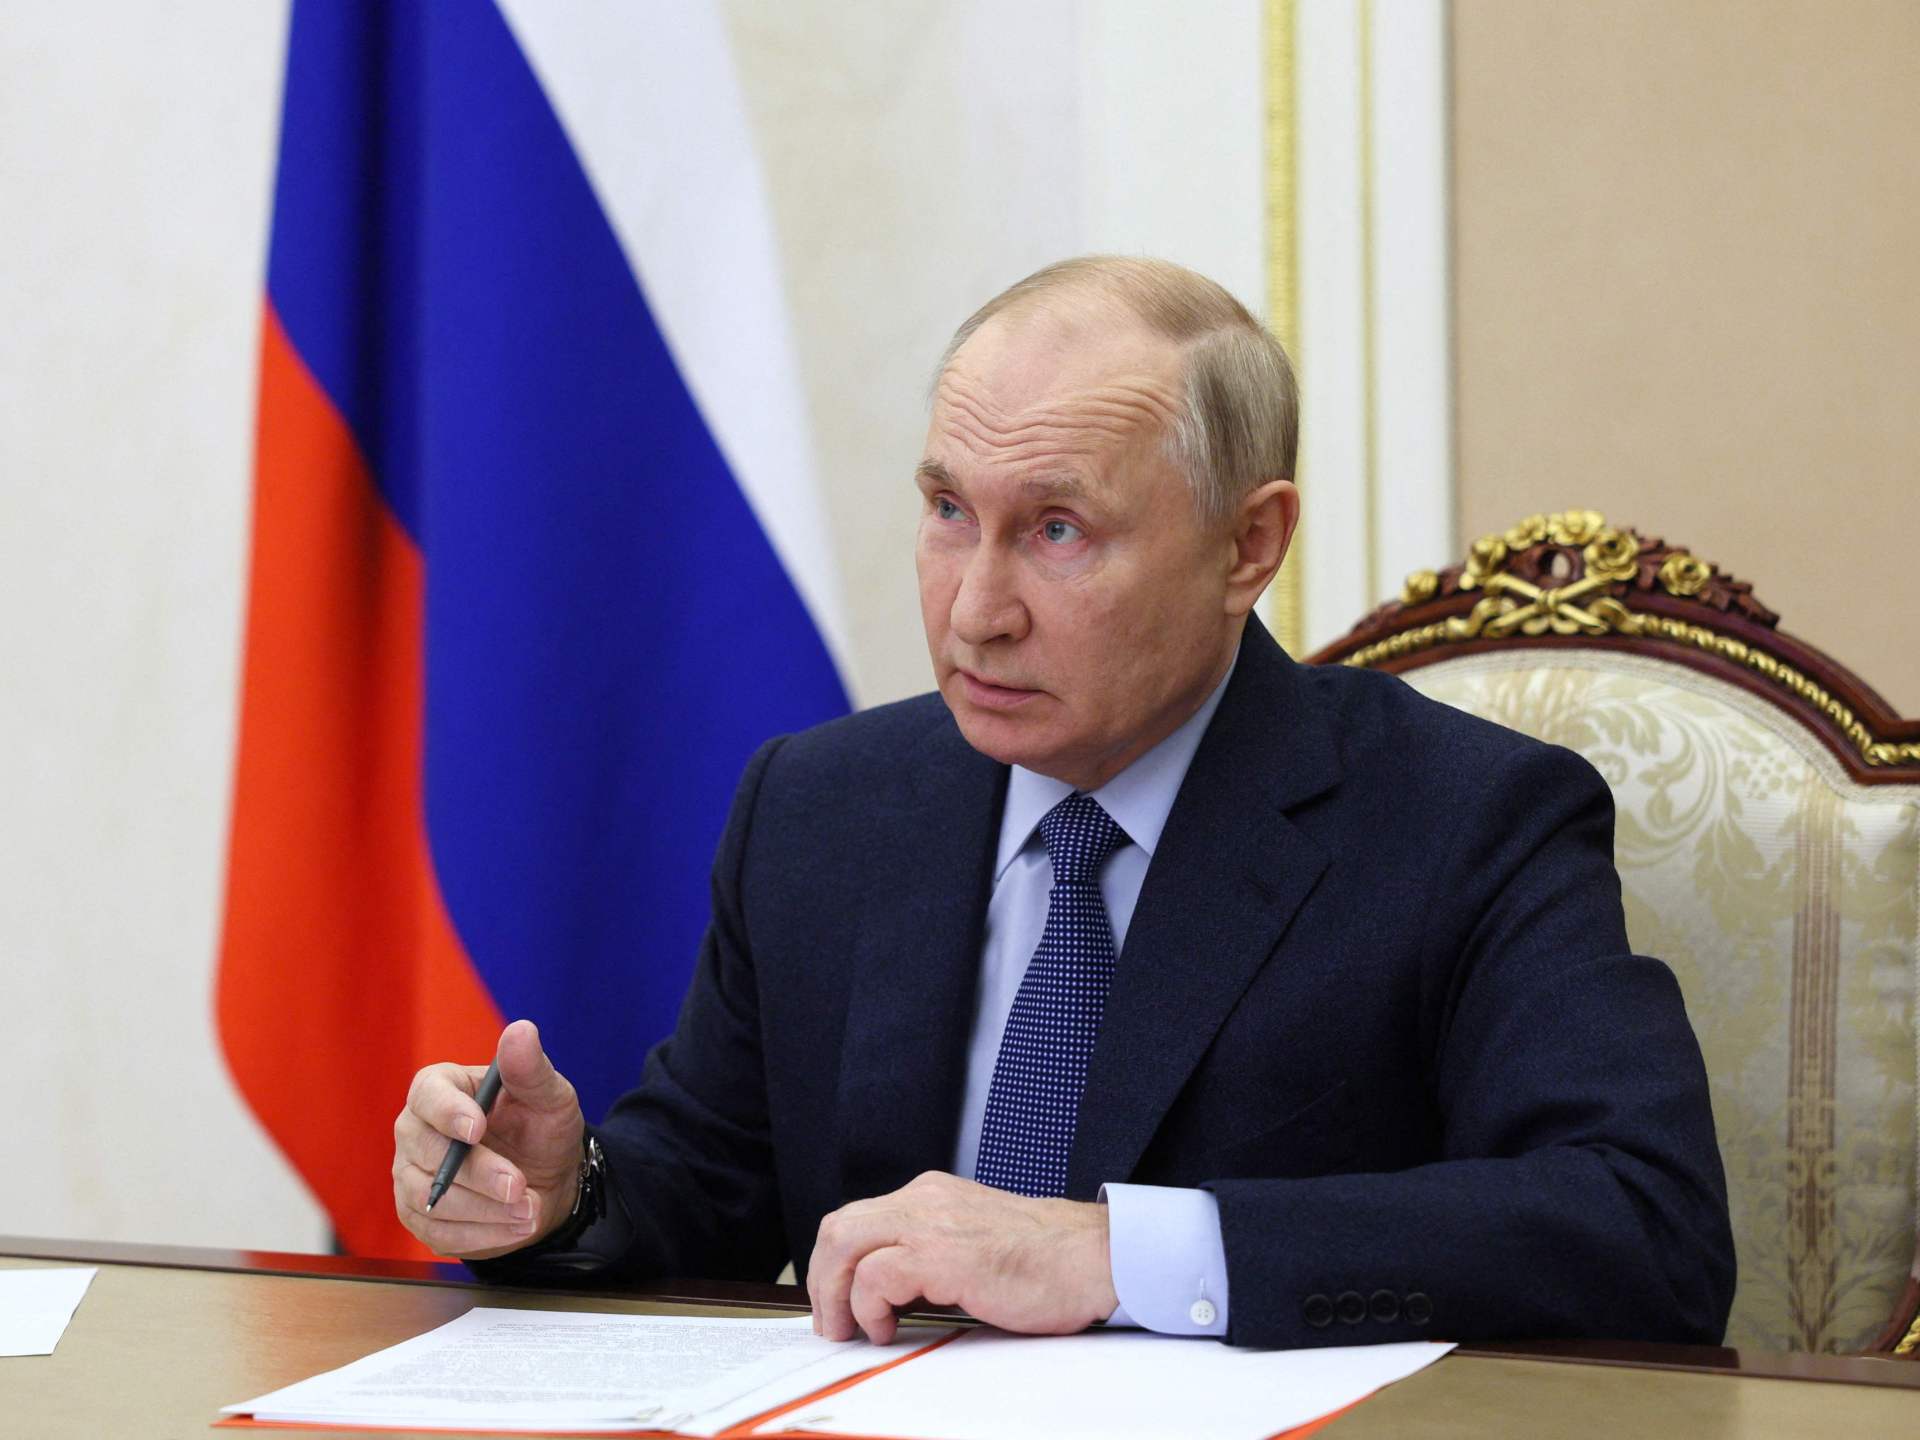 بوتين يوقّع قانونا يلغي مصادقة روسيا على معاهدة حظر التجارب النووية | أخبار – البوكس نيوز